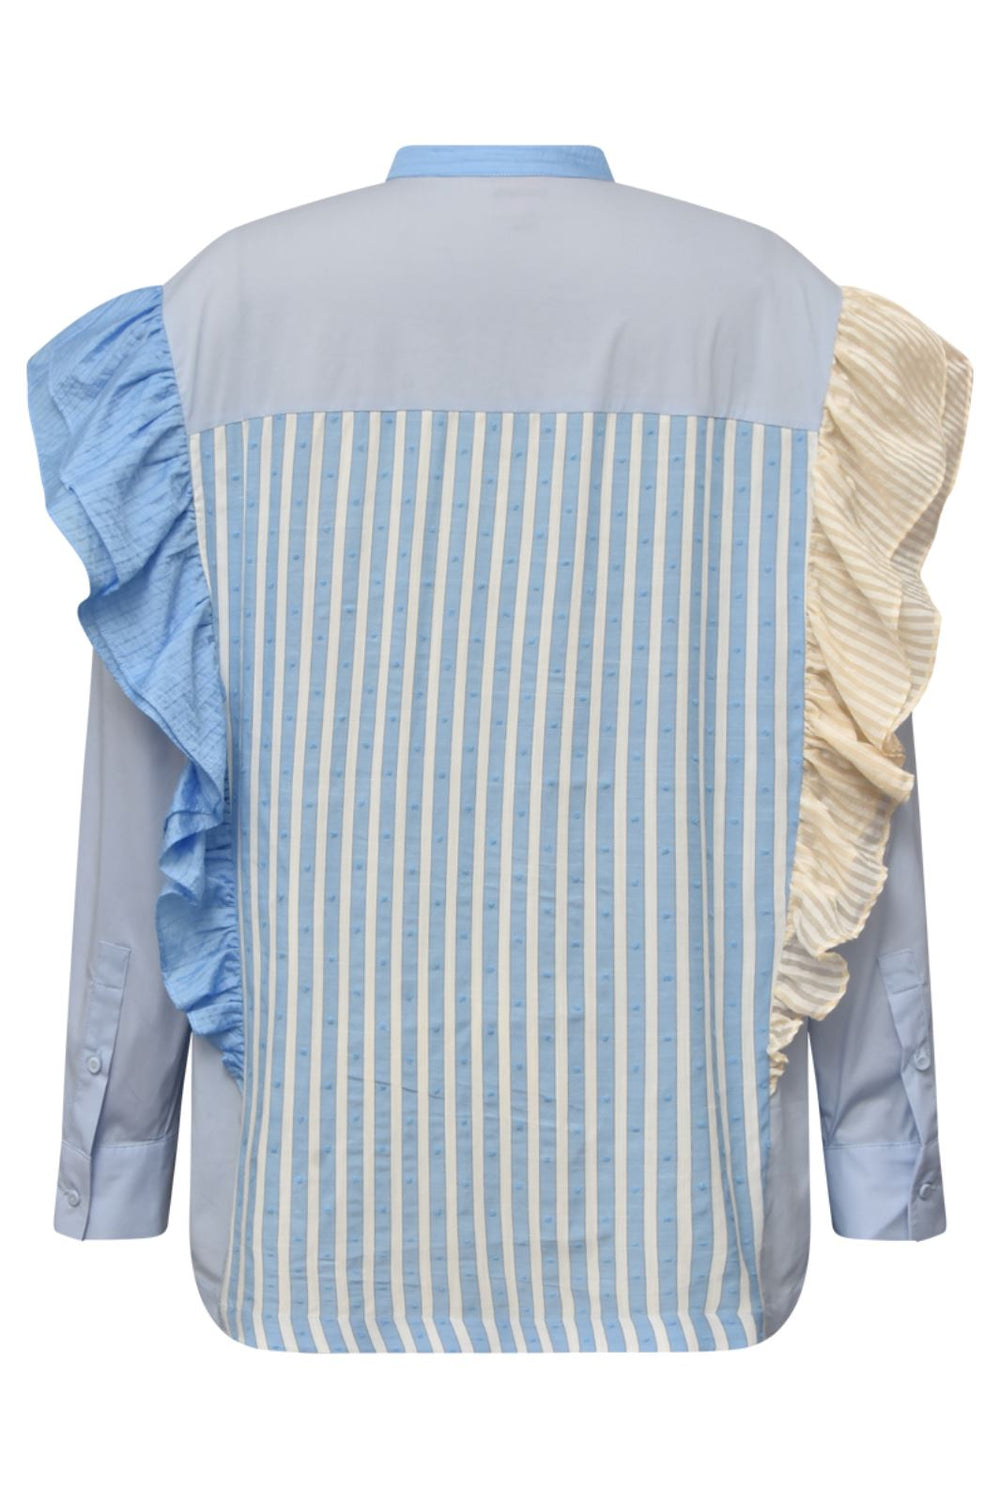 Gossia - KikiGO Shirt - Blue Mix Skjorter 